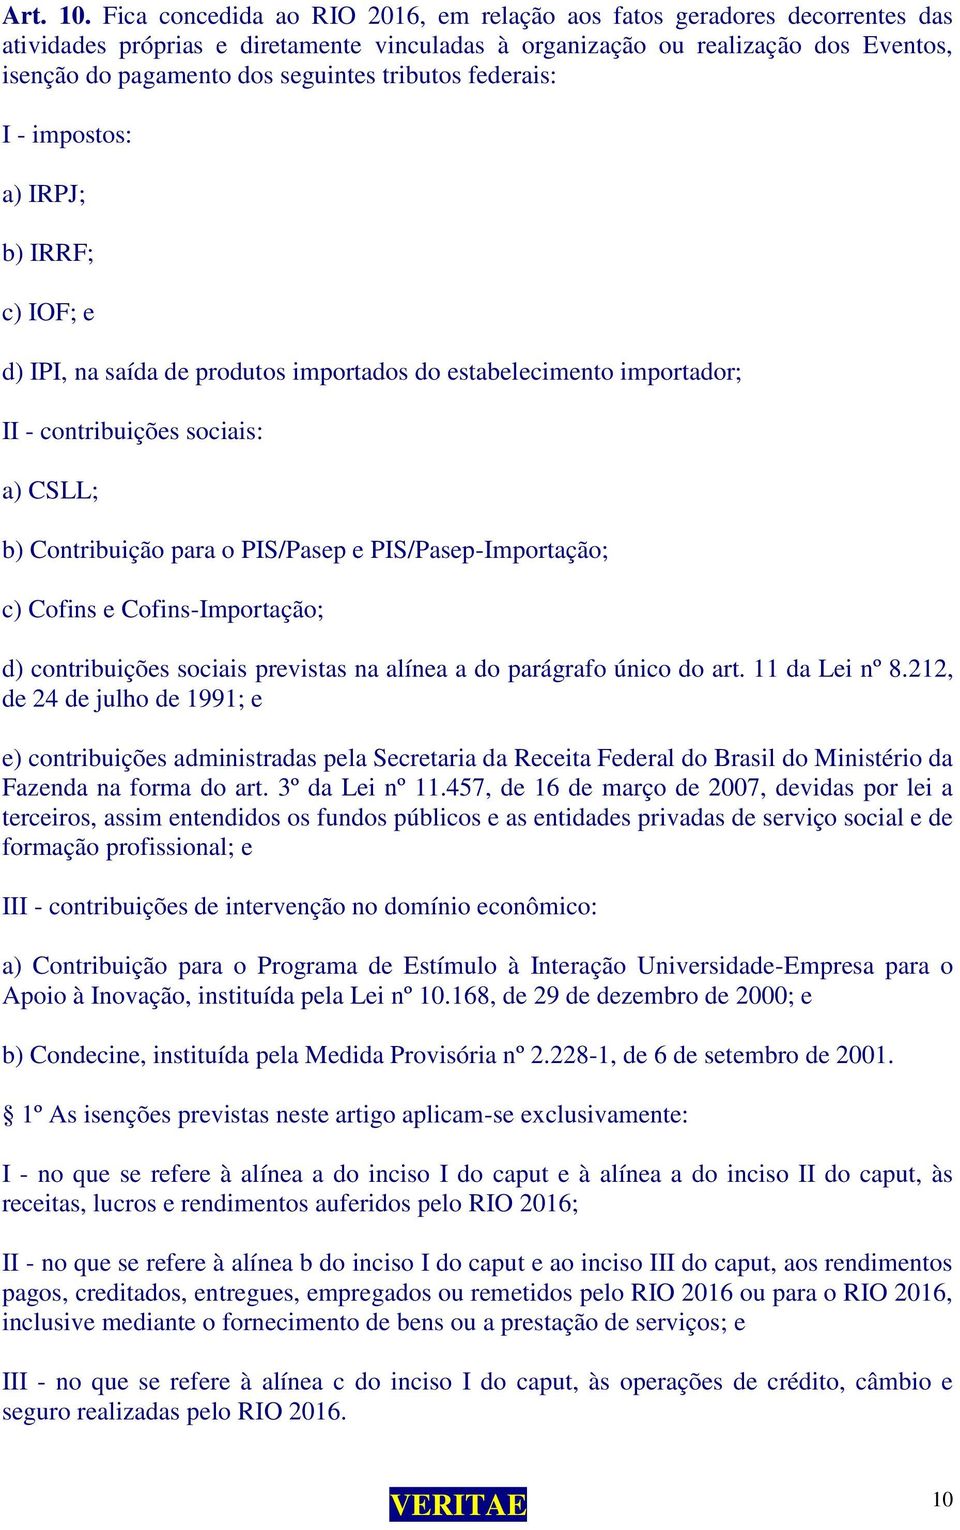 tributos federais: I - impostos: a) IRPJ; b) IRRF; c) IOF; e d) IPI, na saída de produtos importados do estabelecimento importador; II - contribuições sociais: a) CSLL; b) Contribuição para o